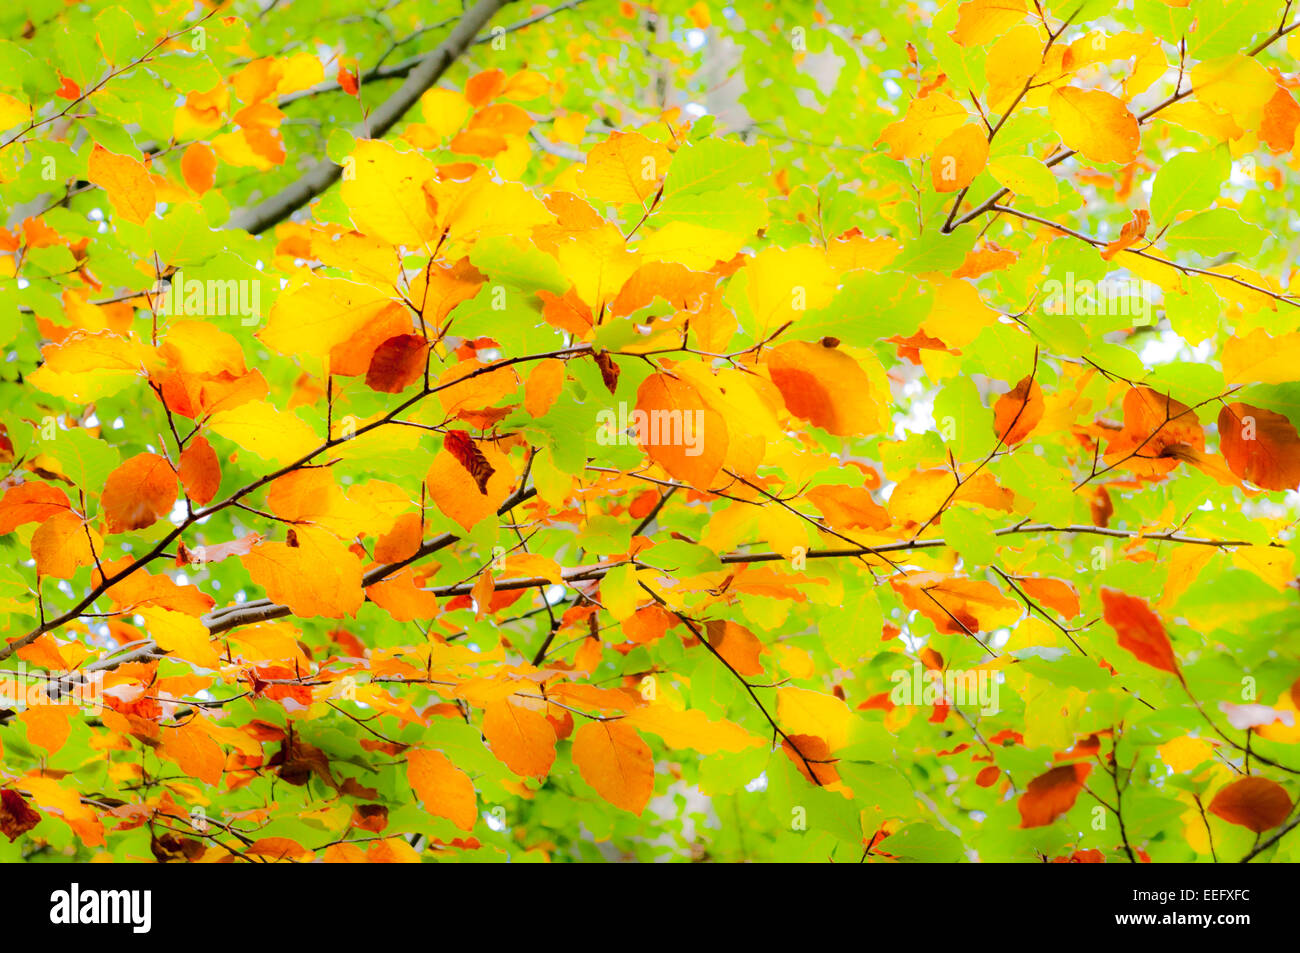 Colori brillanti di foglie di albero può essere utile come sfondi soft focus immagine Foto Stock